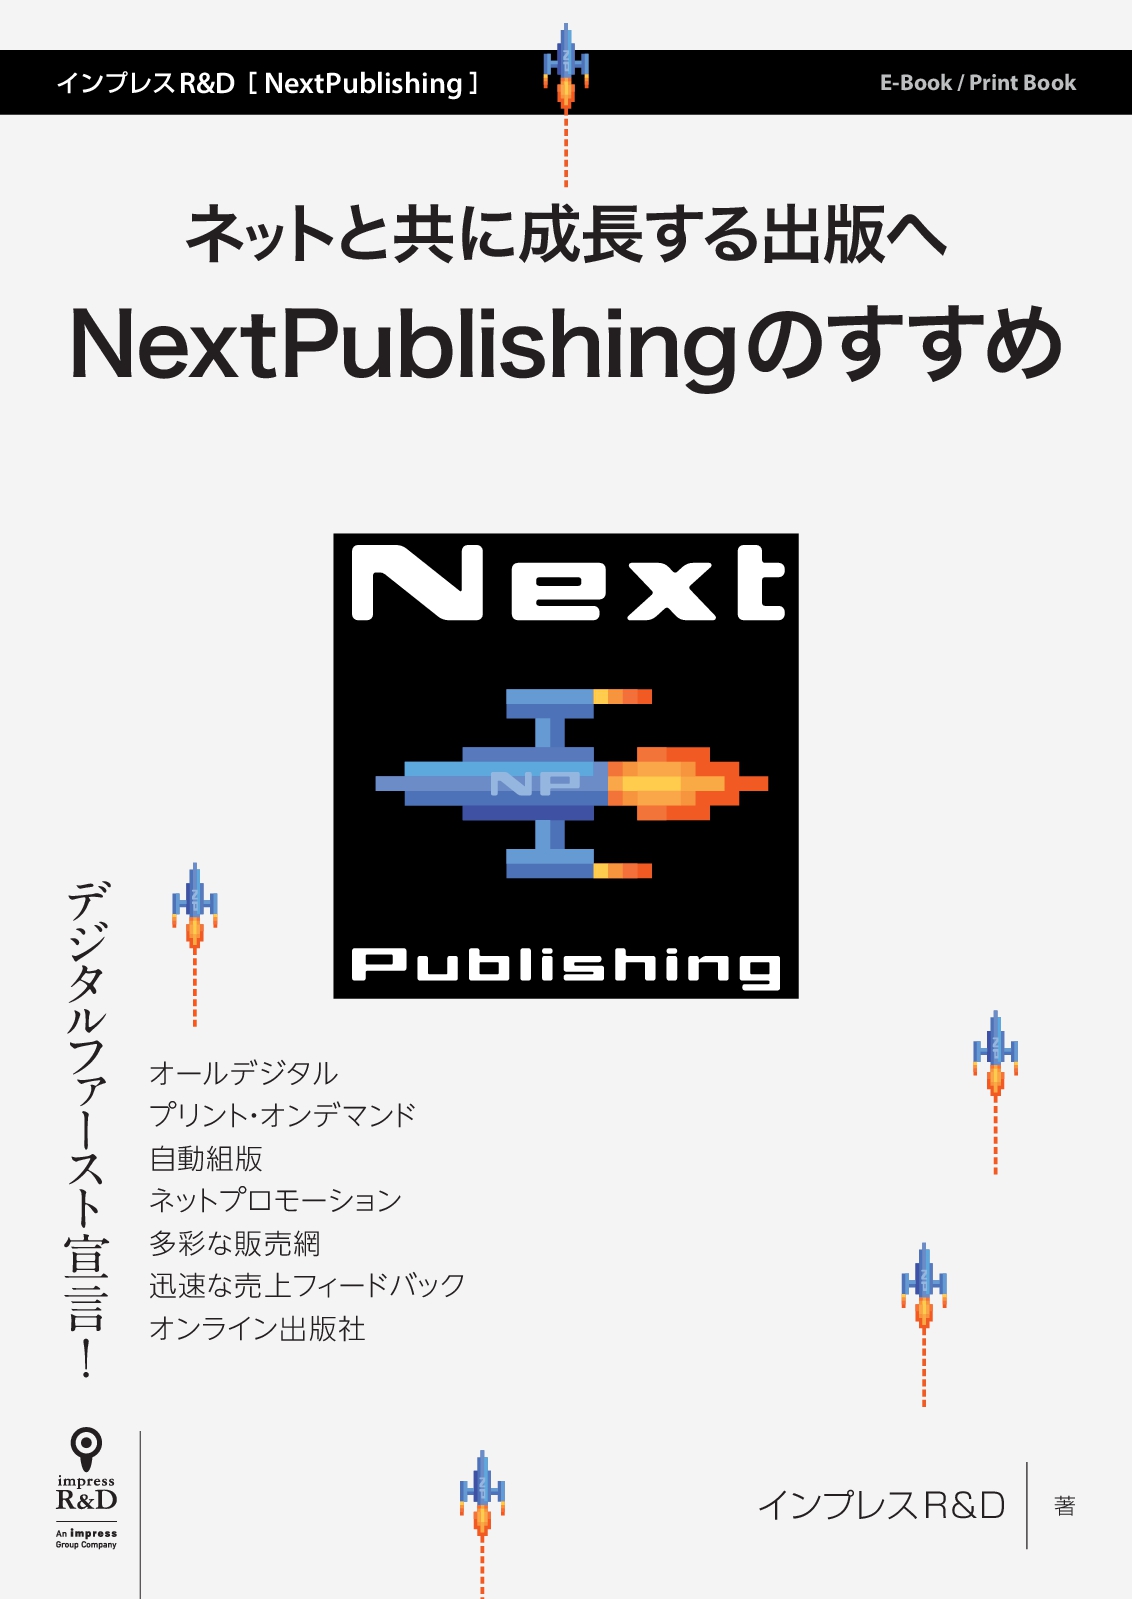 インプレスr D 電子出版プラットフォーム Nextpublishing の解説書を発行 Pdf版は弊社サイトで無料公開 株式会社インプレス ホールディングスのプレスリリース